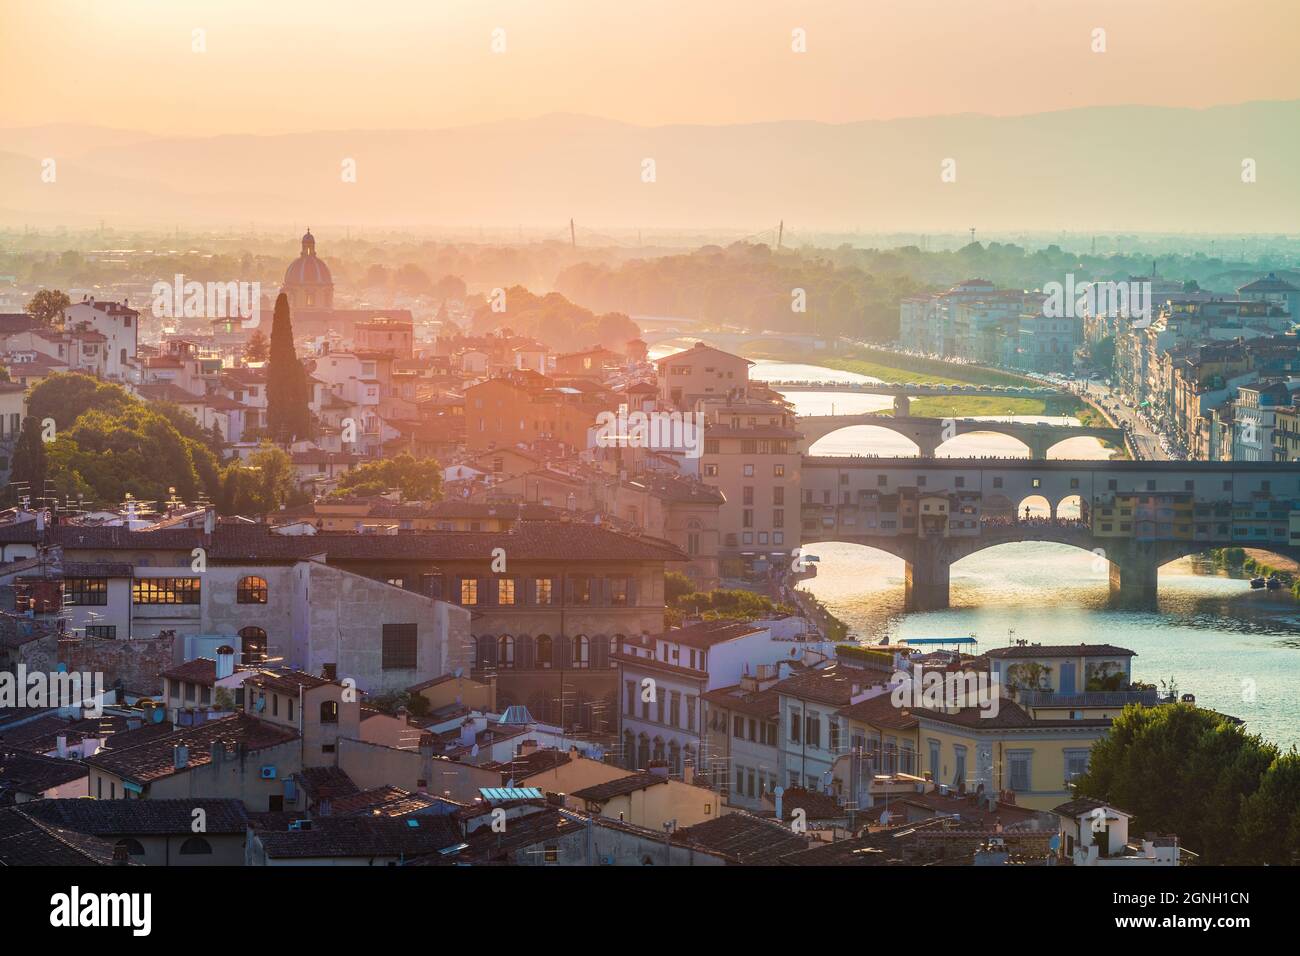 Colorato paesaggio urbano serale di Firenze, Italia, Europa. Bellissimo ponte medievale ad arco di origine romana - Ponte Vecchio sul fiume Arno.riv Foto Stock